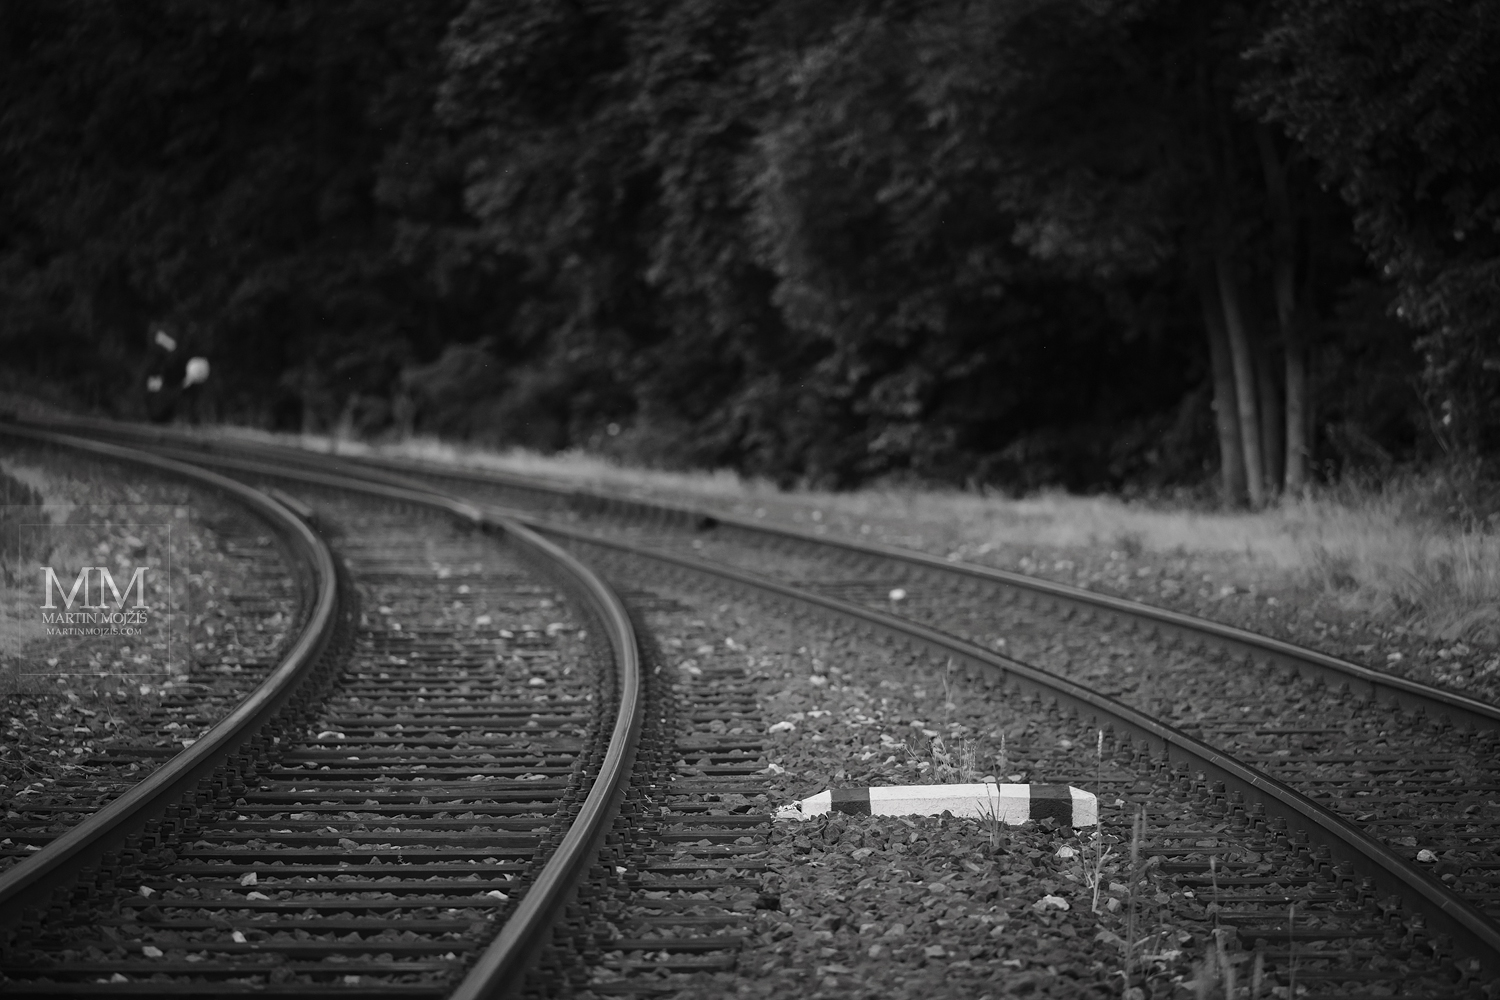 Železniční námezník. Umělecká černobílá fotografie s názvem NÁMEZNÍK. Fotograf Martin Mojžíš.